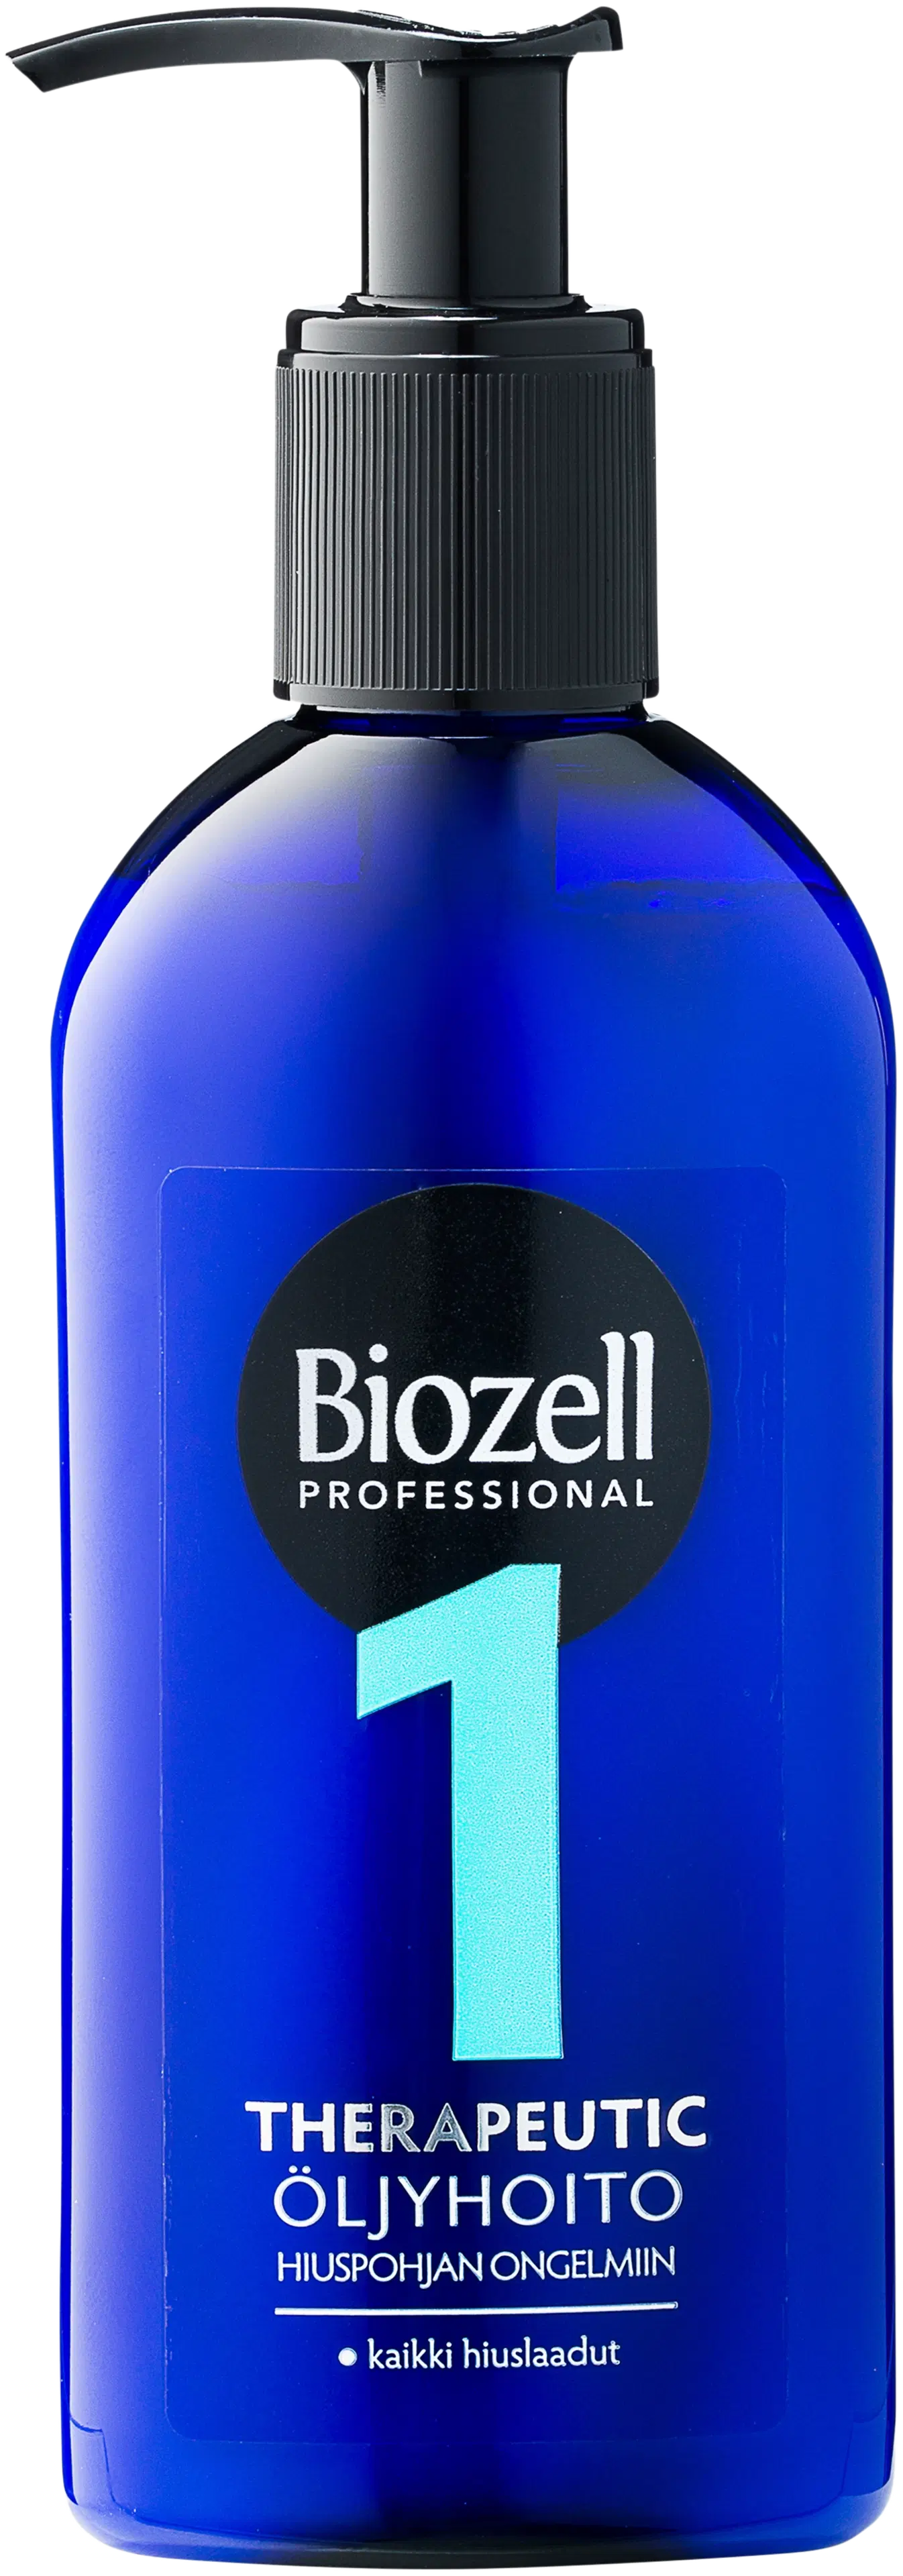 Biozell Professional Therapeutic Öljyhoito kaikille hiuslaaduille 200ml